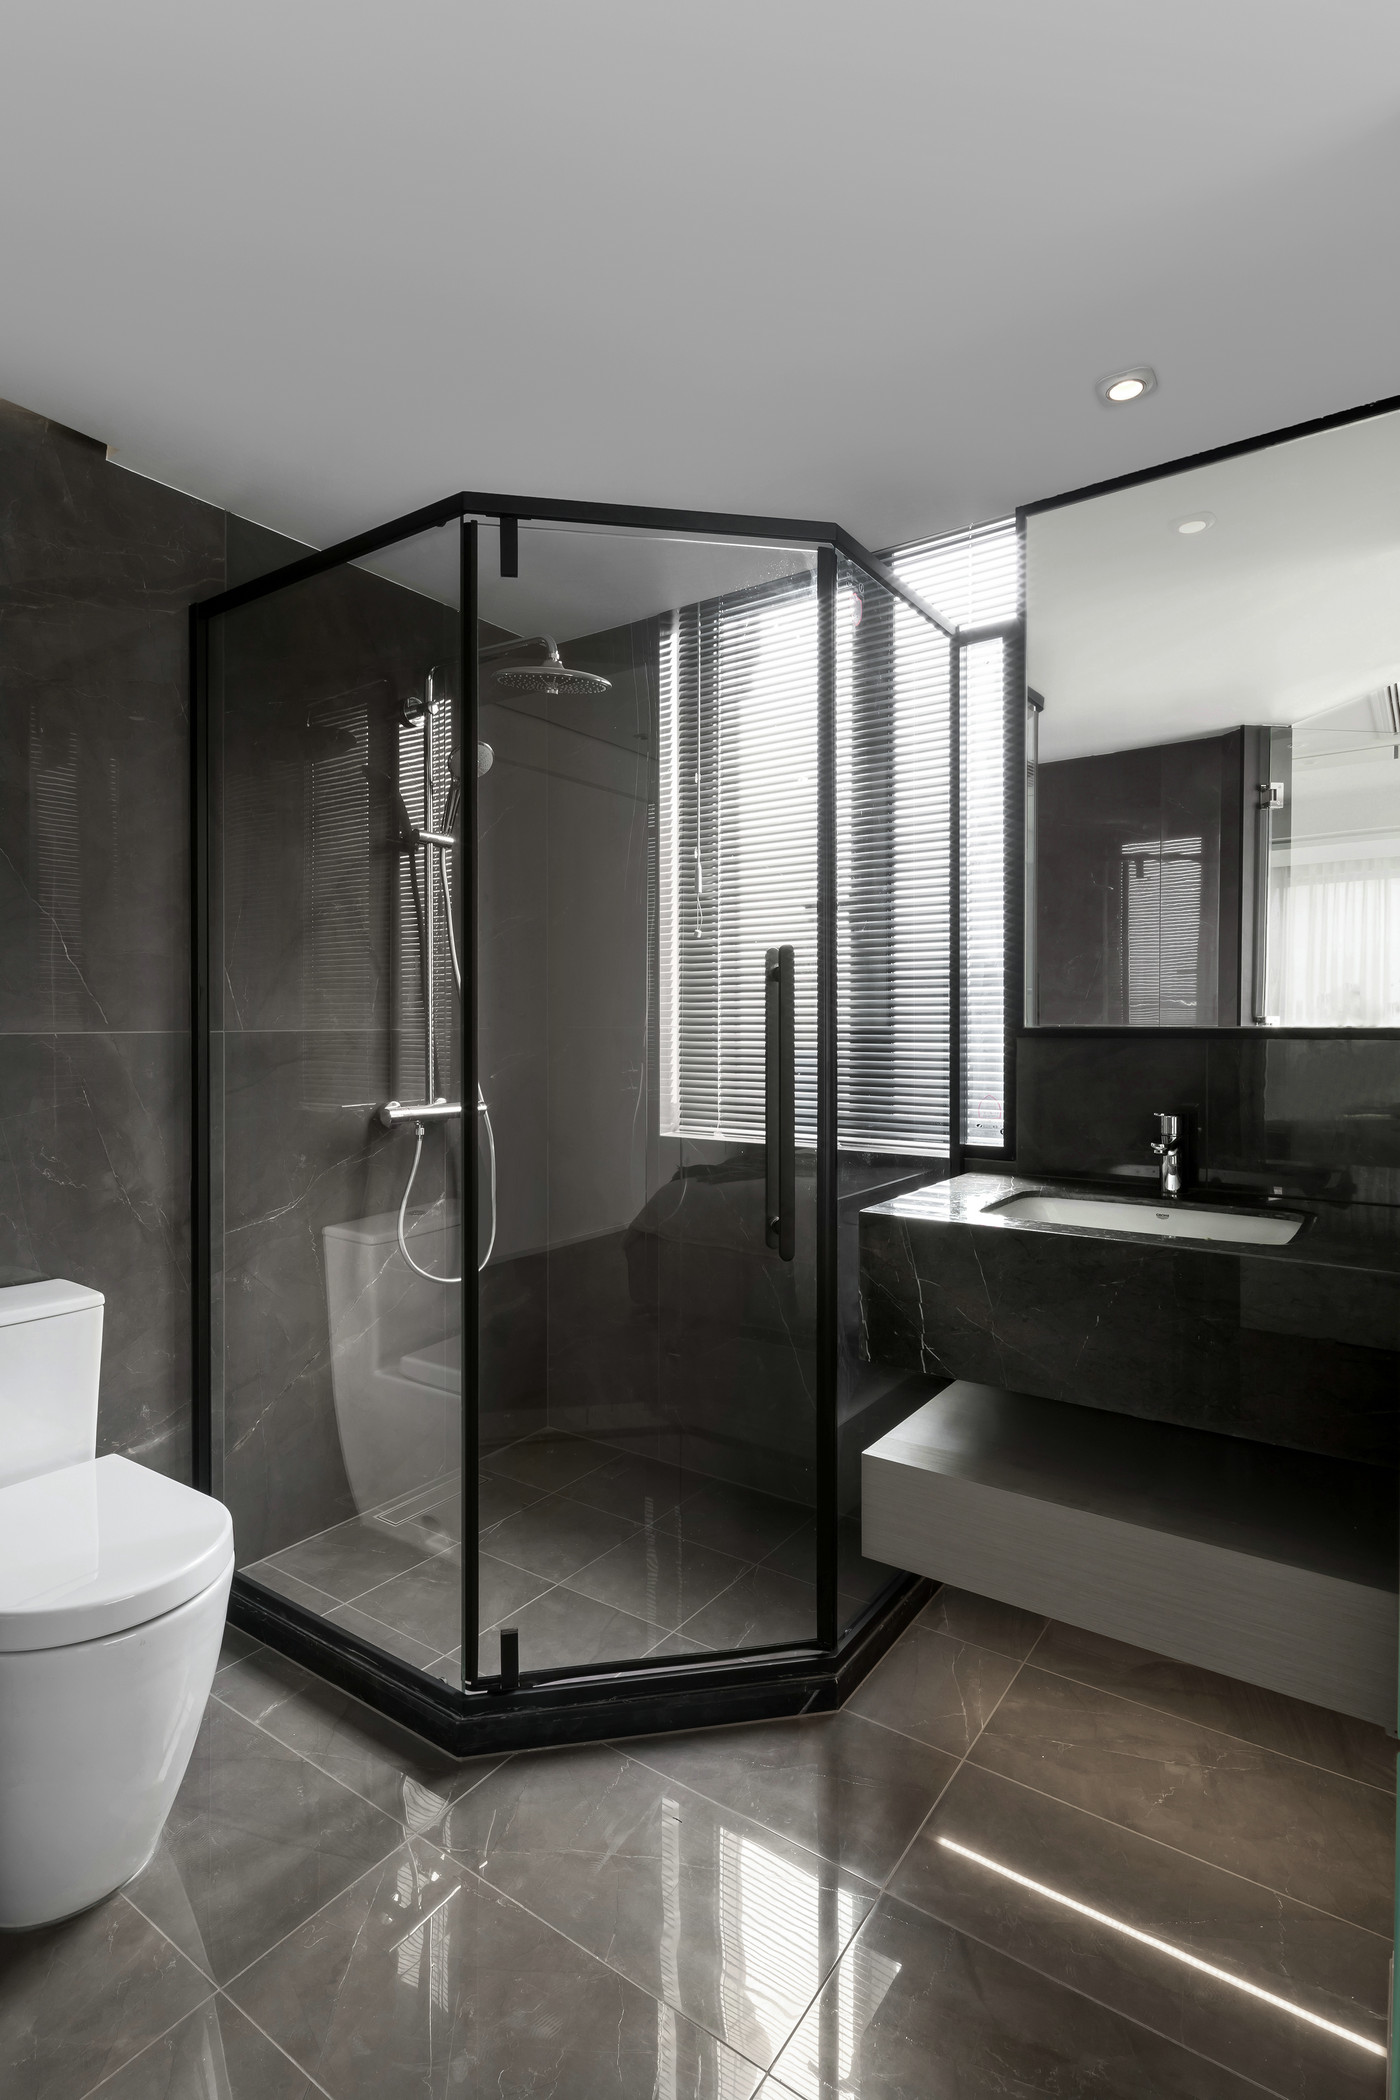 主卫结构设计巧妙，利用卫浴空间规避户型缺陷，空间呈现出精致舒适的美感。